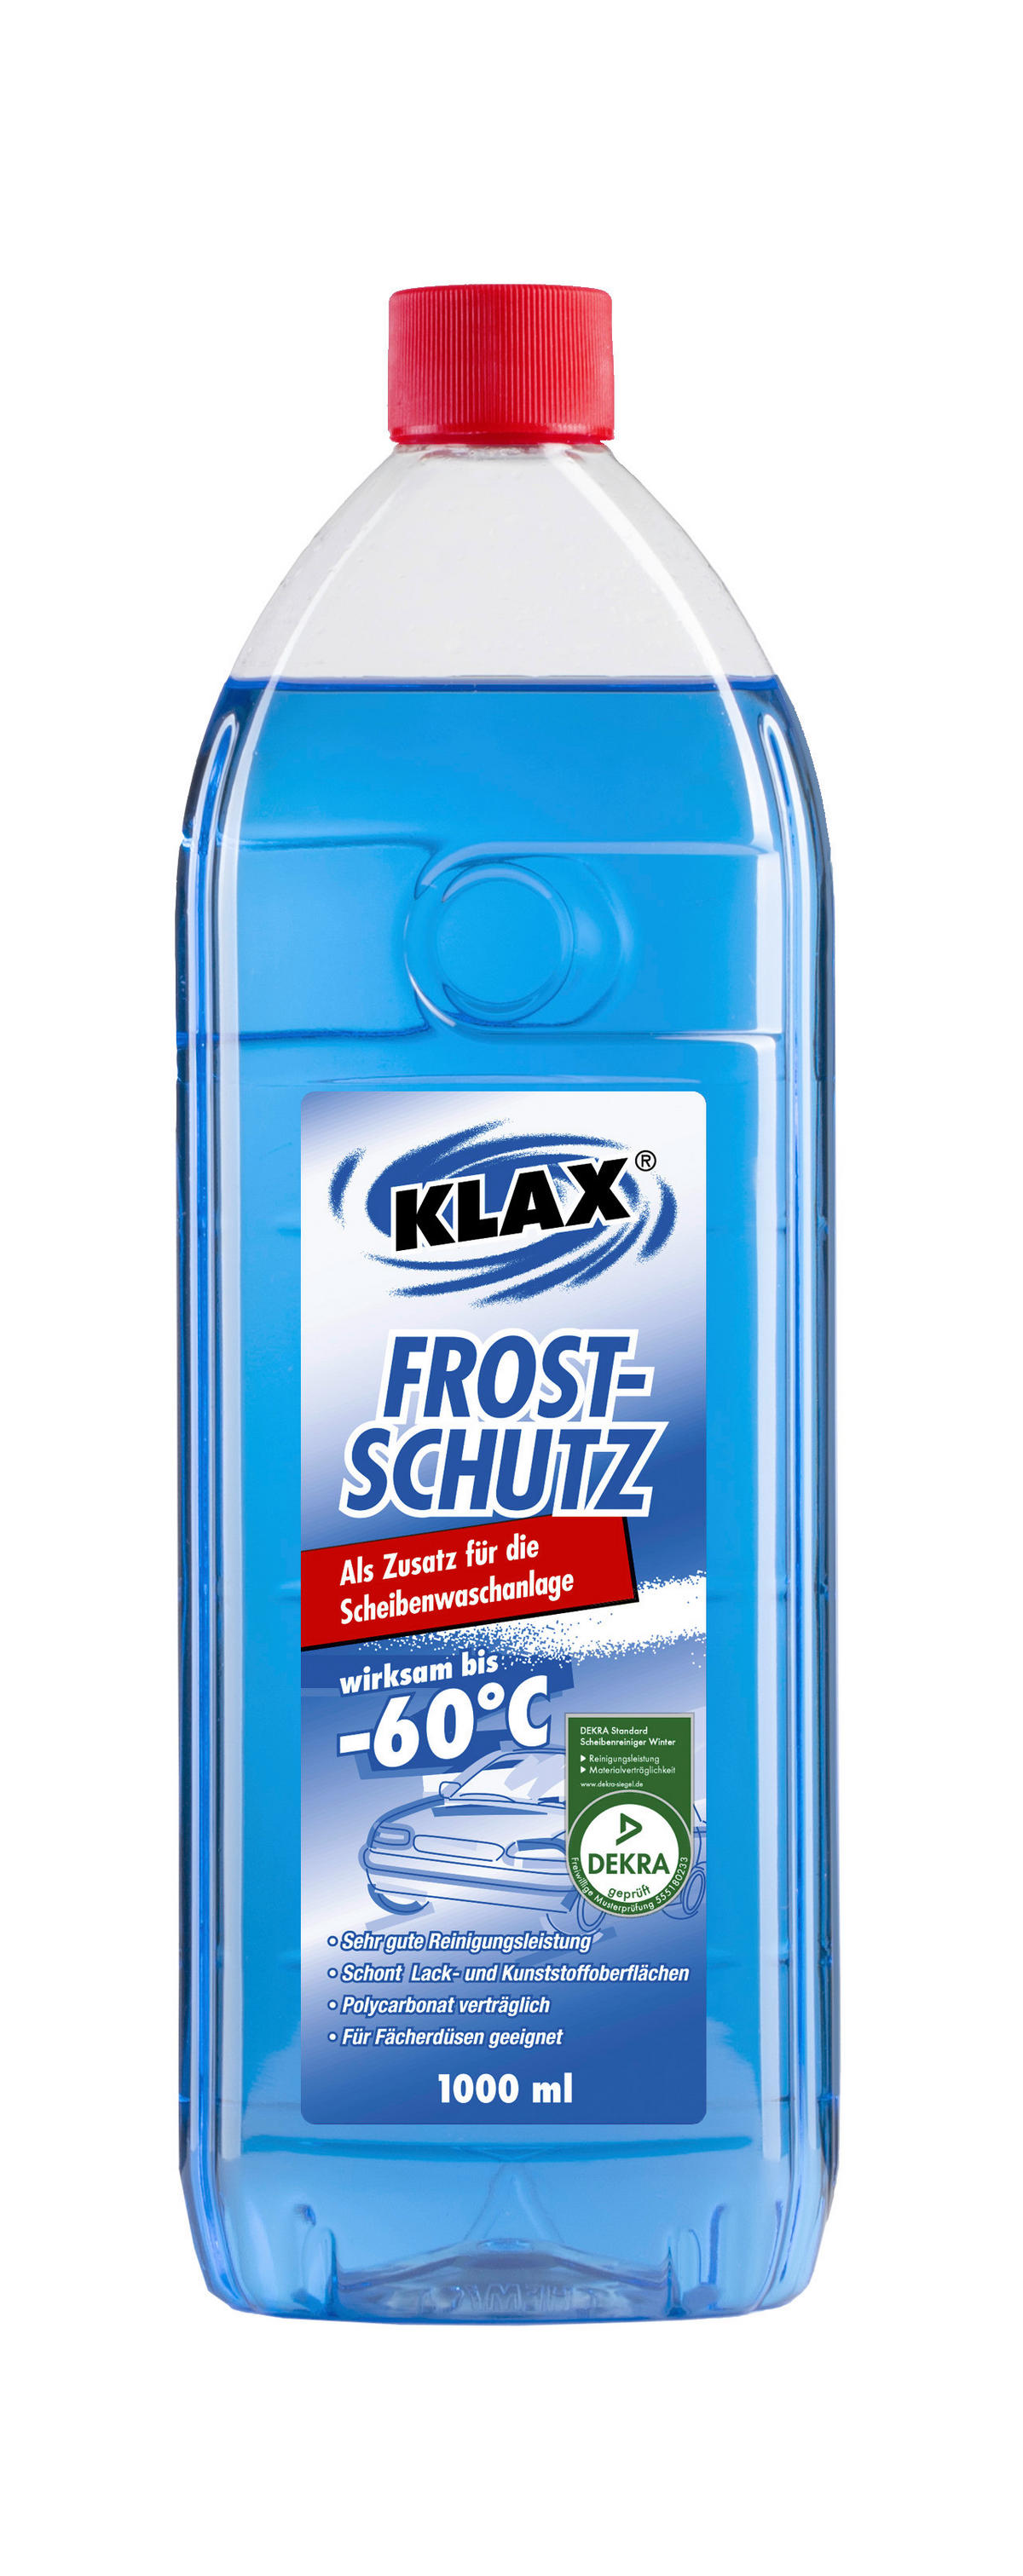 Scheibenfrostschutz -30 °C Winter Frostschutz TOP von Dekra